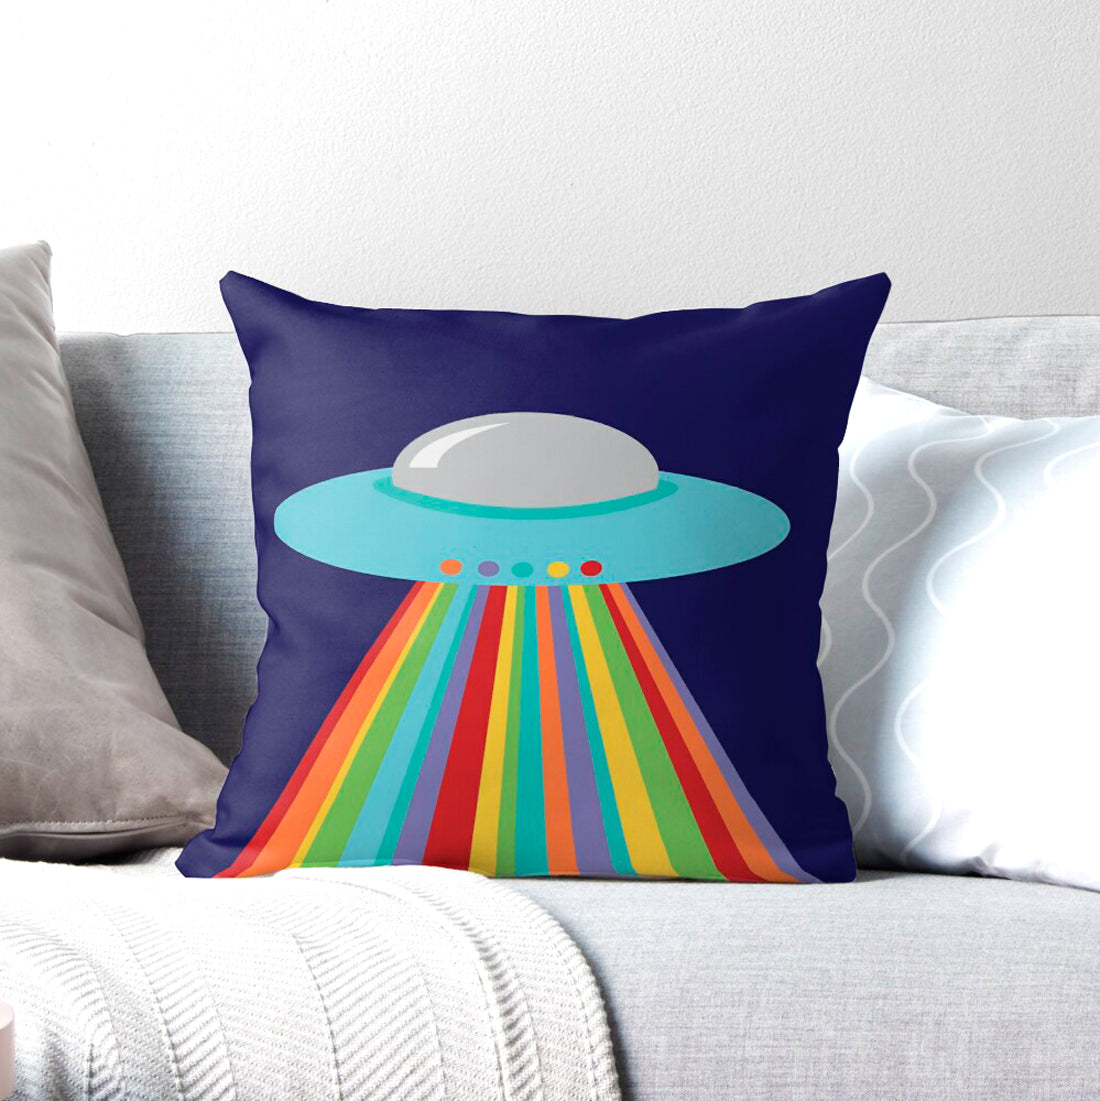 UFO cushion cover